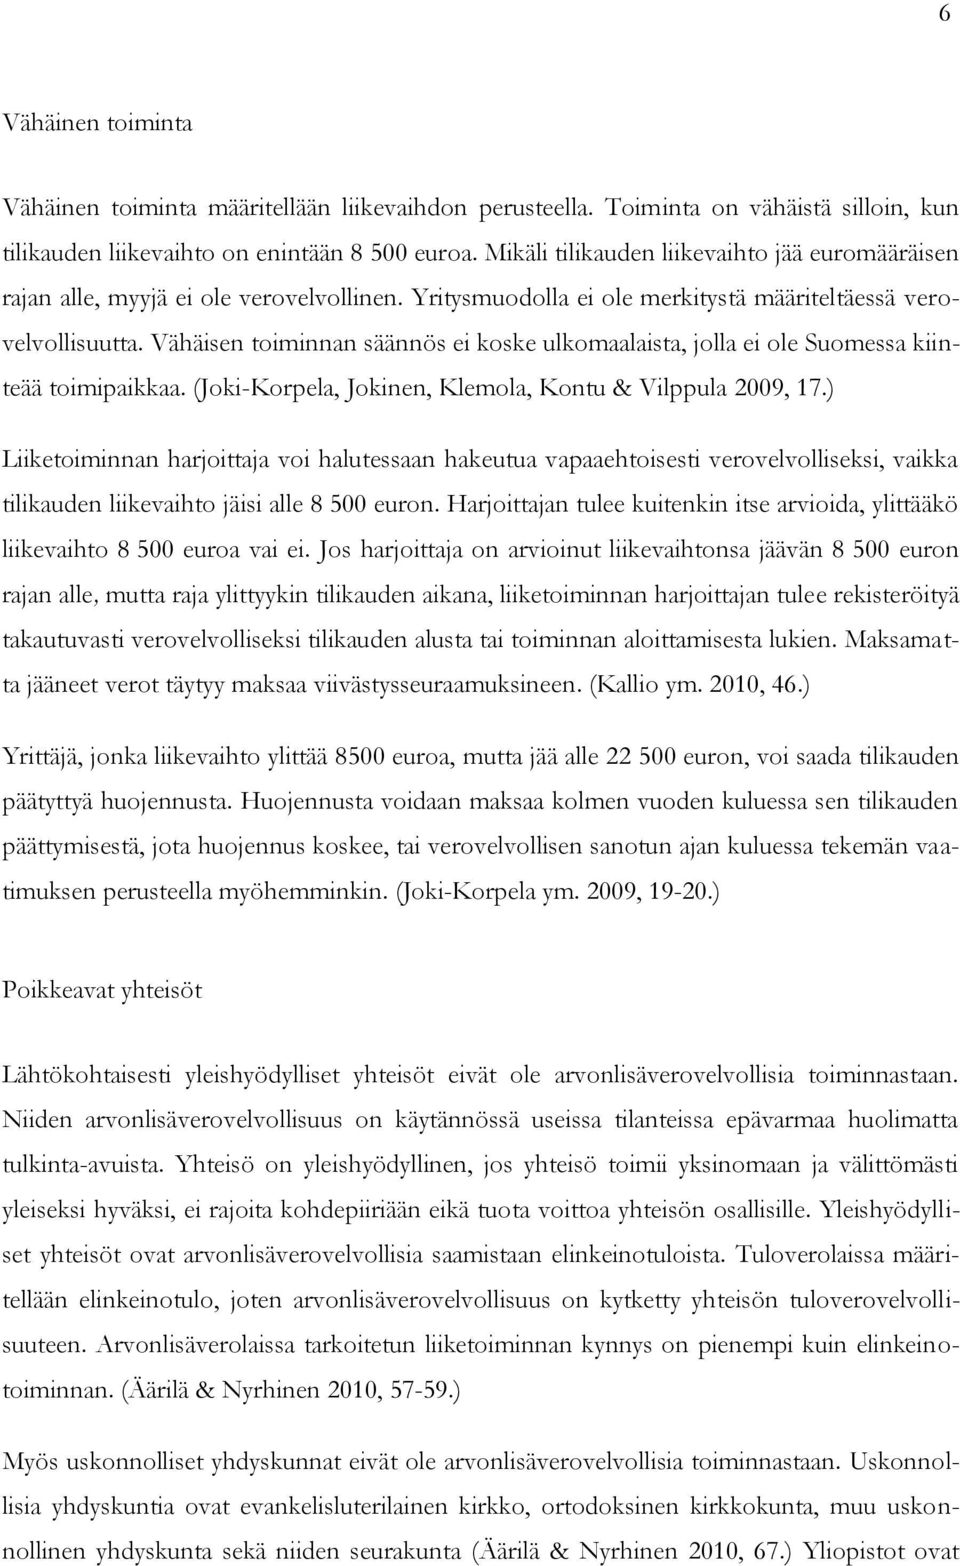 Vähäisen toiminnan säännös ei koske ulkomaalaista, jolla ei ole Suomessa kiinteää toimipaikkaa. (Joki-Korpela, Jokinen, Klemola, Kontu & Vilppula 2009, 17.